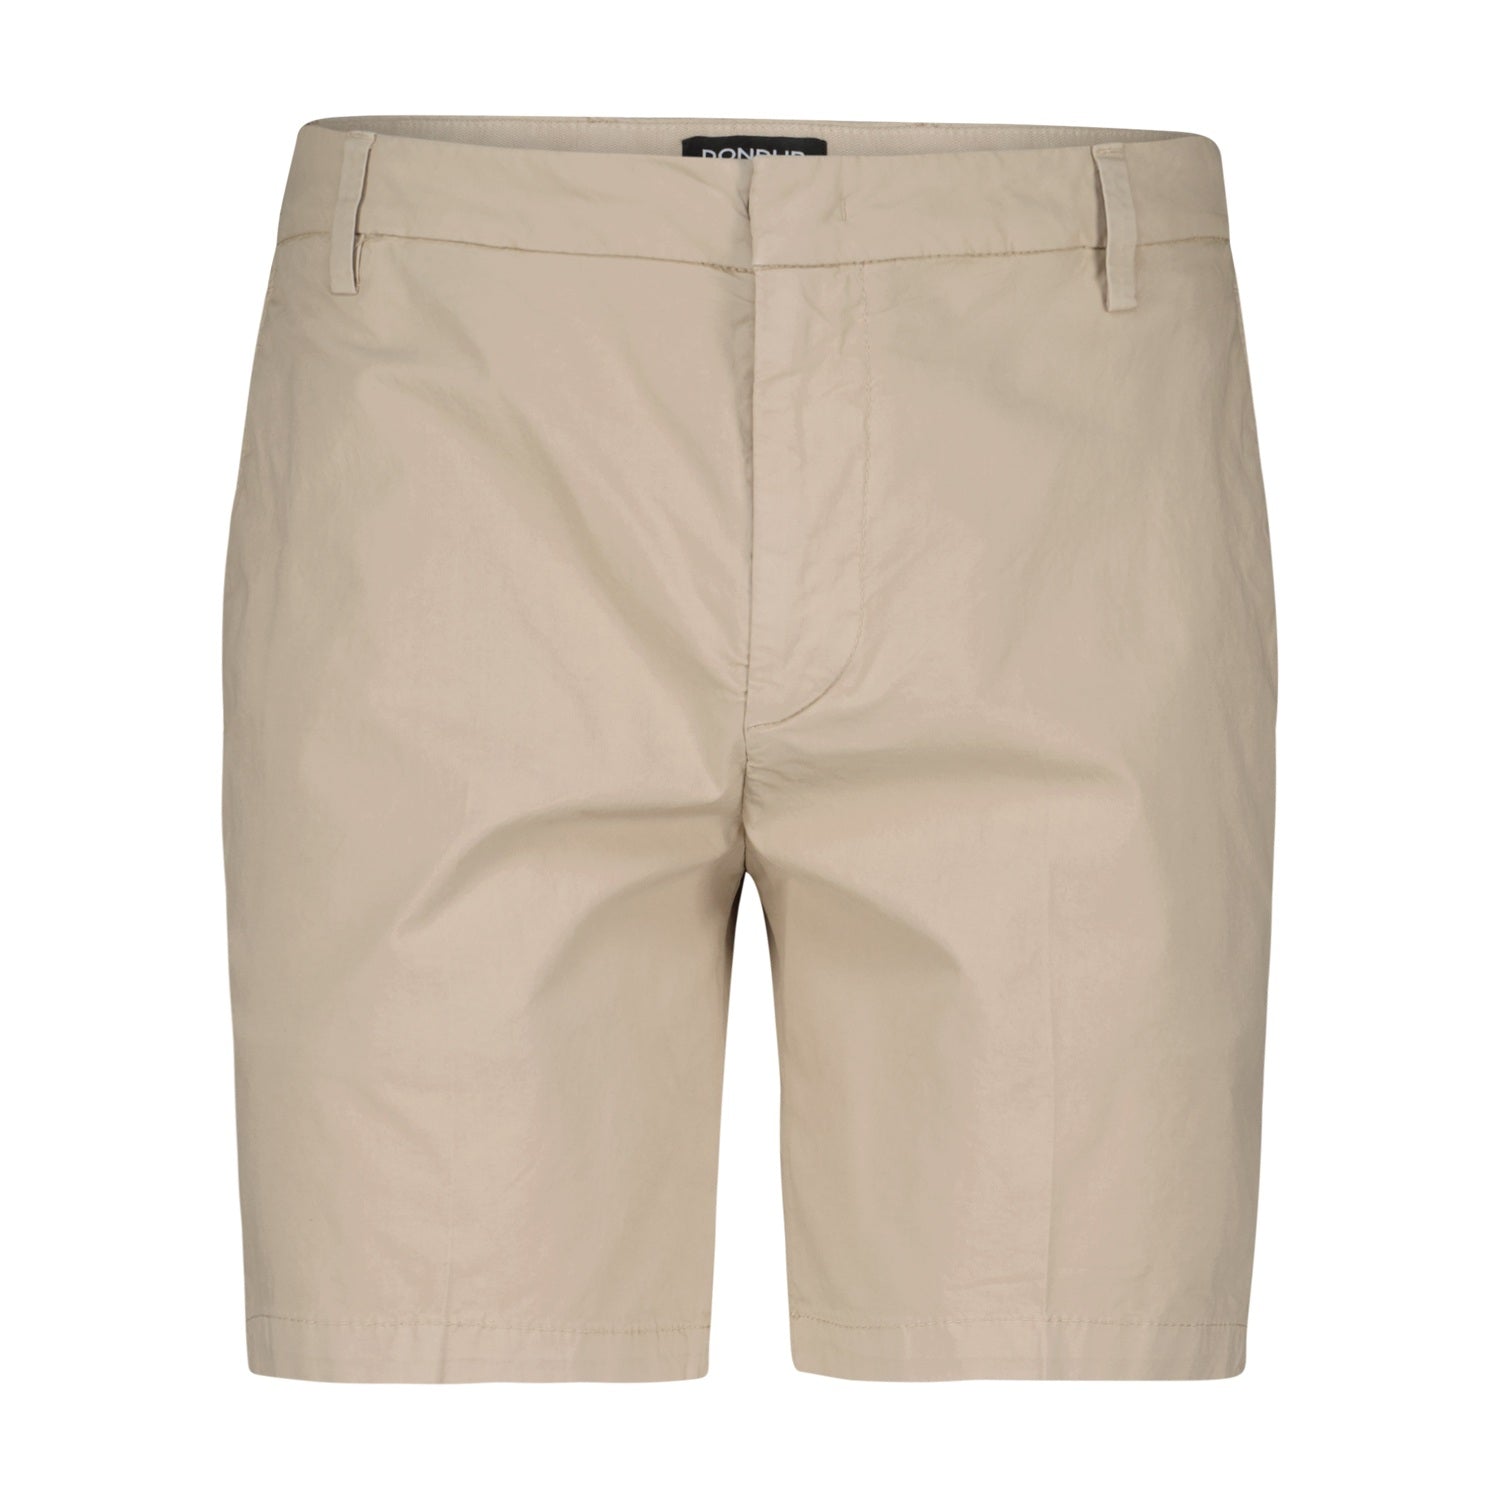 Bermuda Shorts Manheim aus Baumwolle